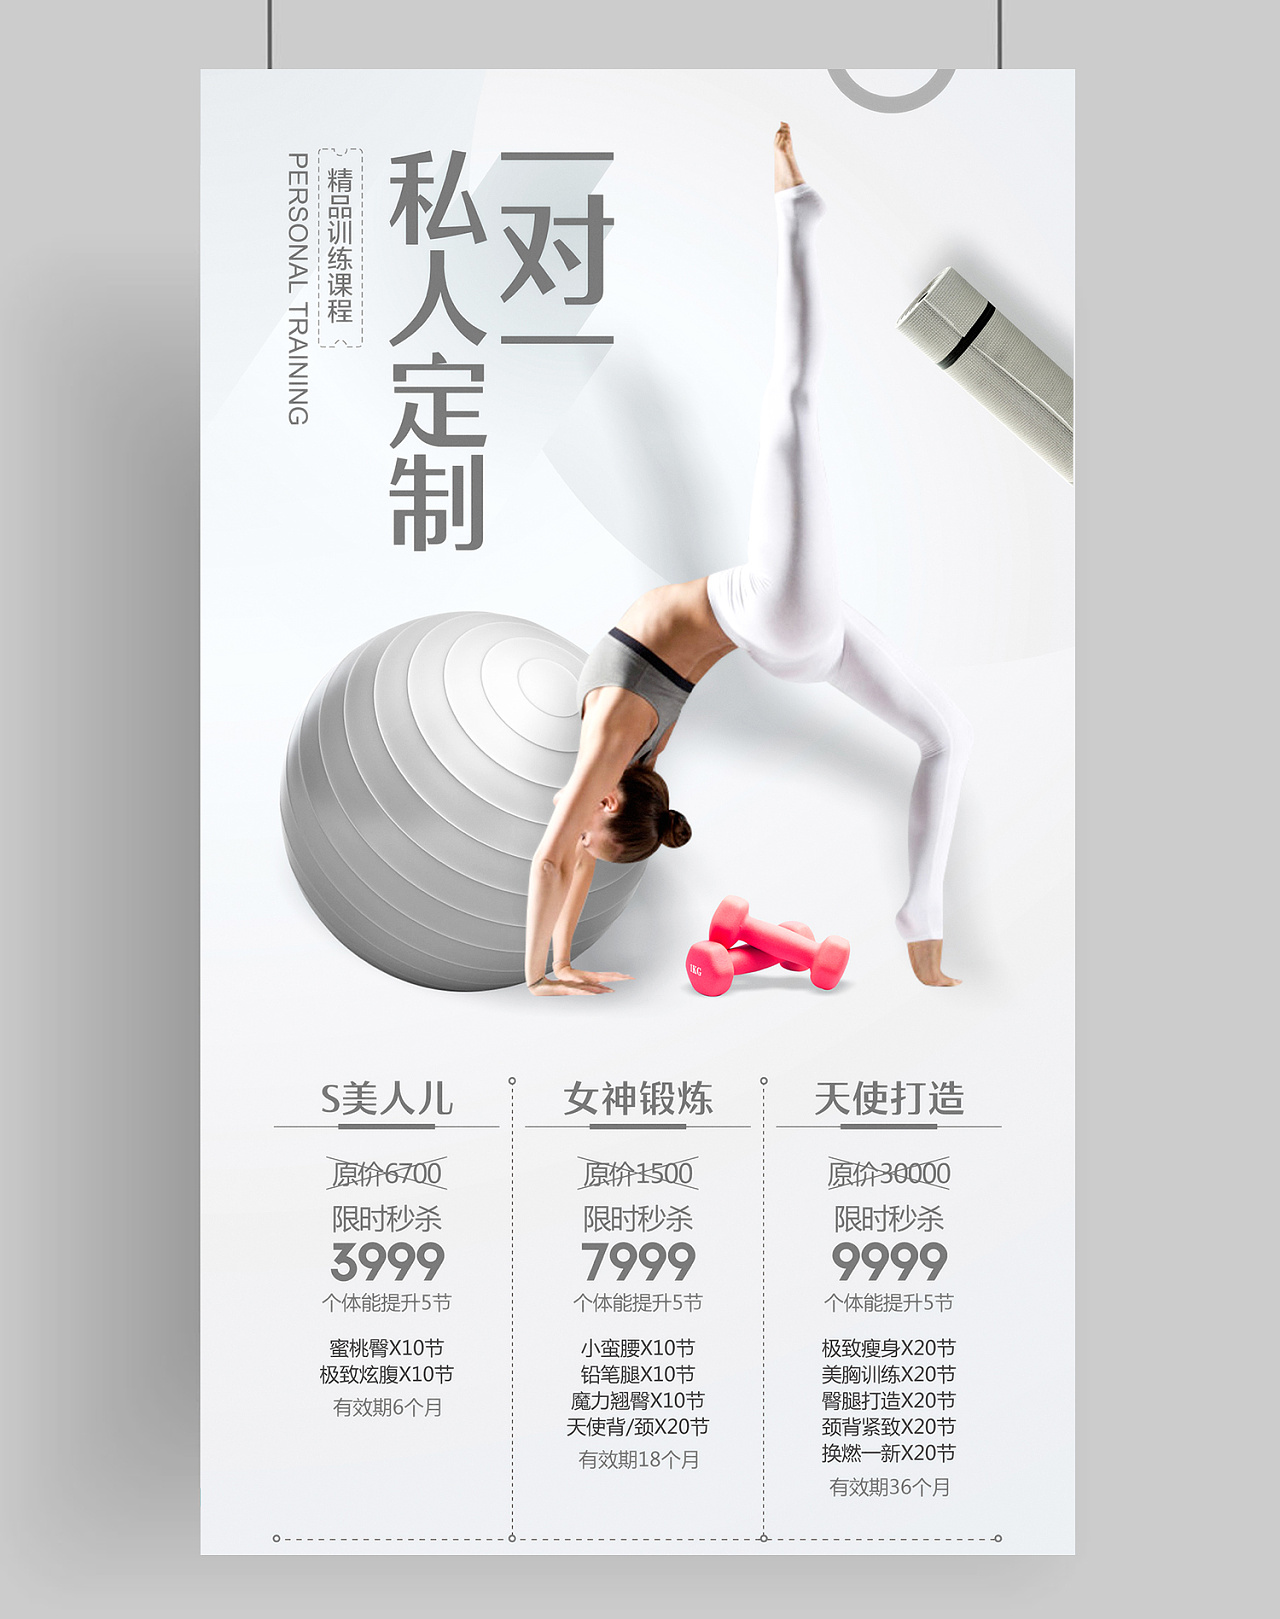 0基础瑜伽教练培训-搜狐大视野-搜狐新闻